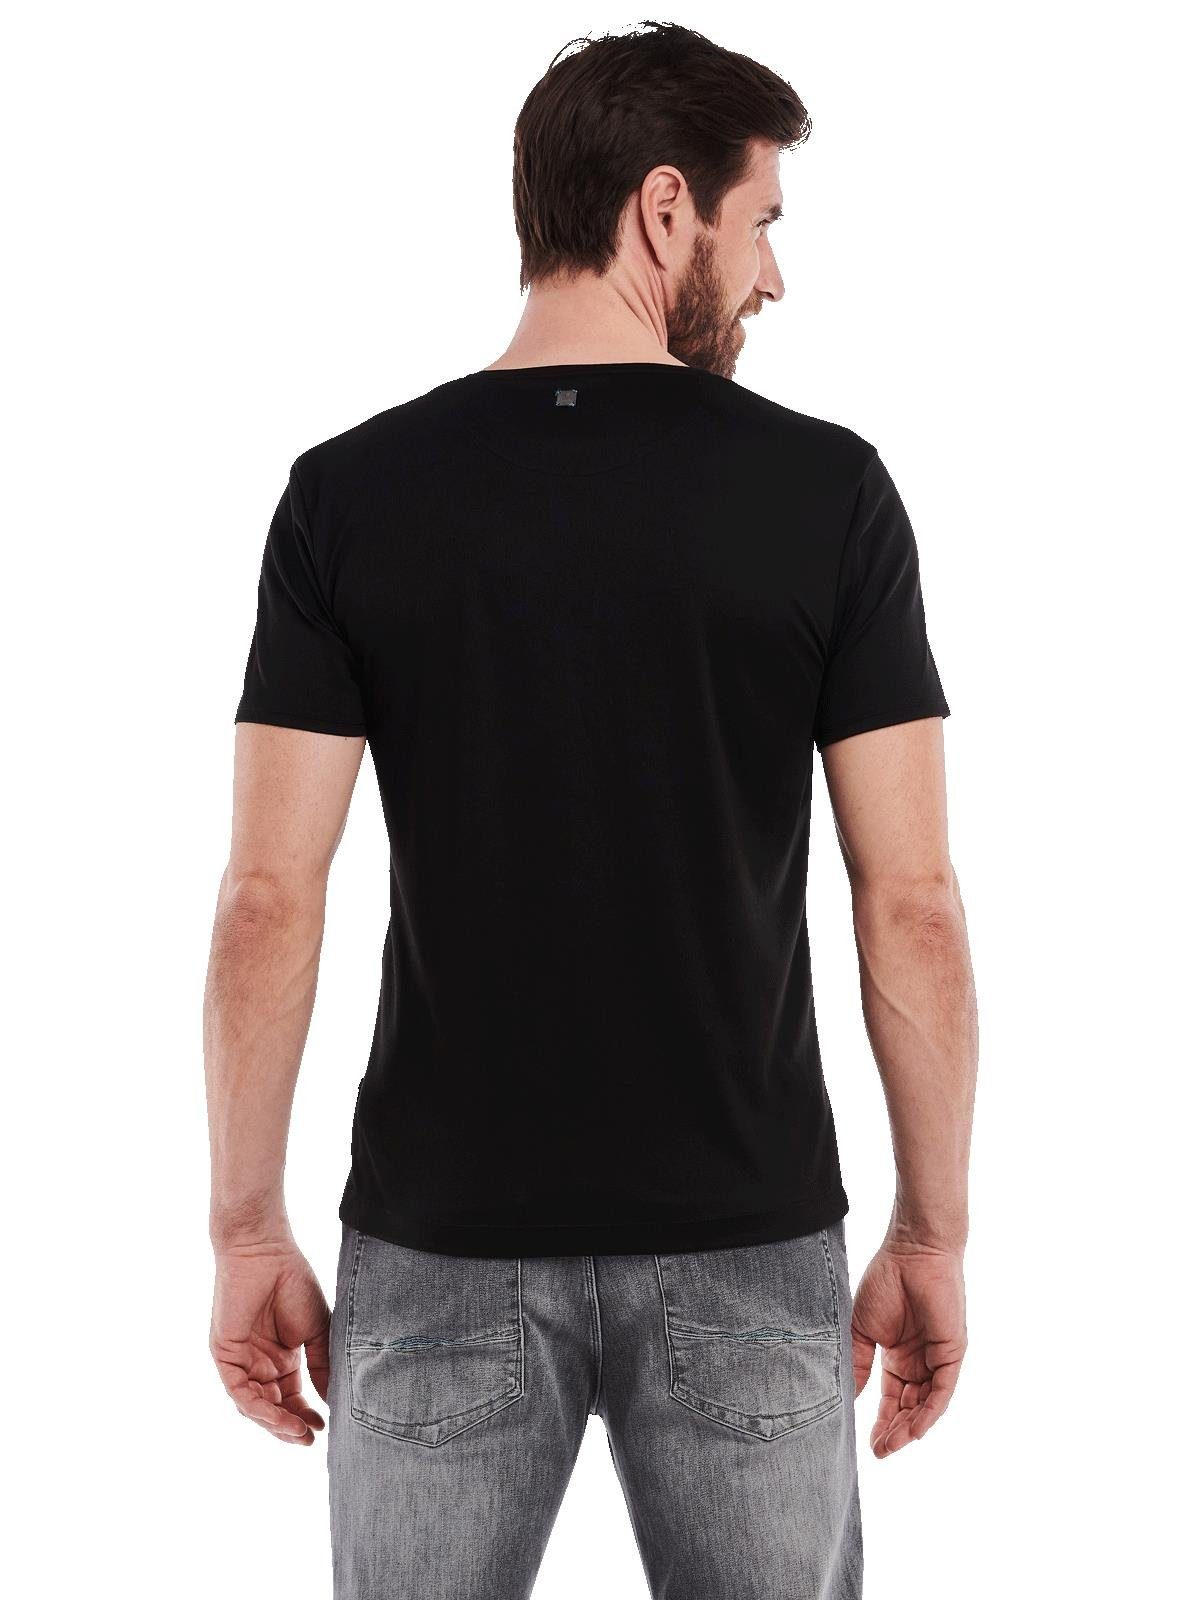 Rundhalsshirt T-Shirt Verarbeitung nachhaltiger Engbers aus